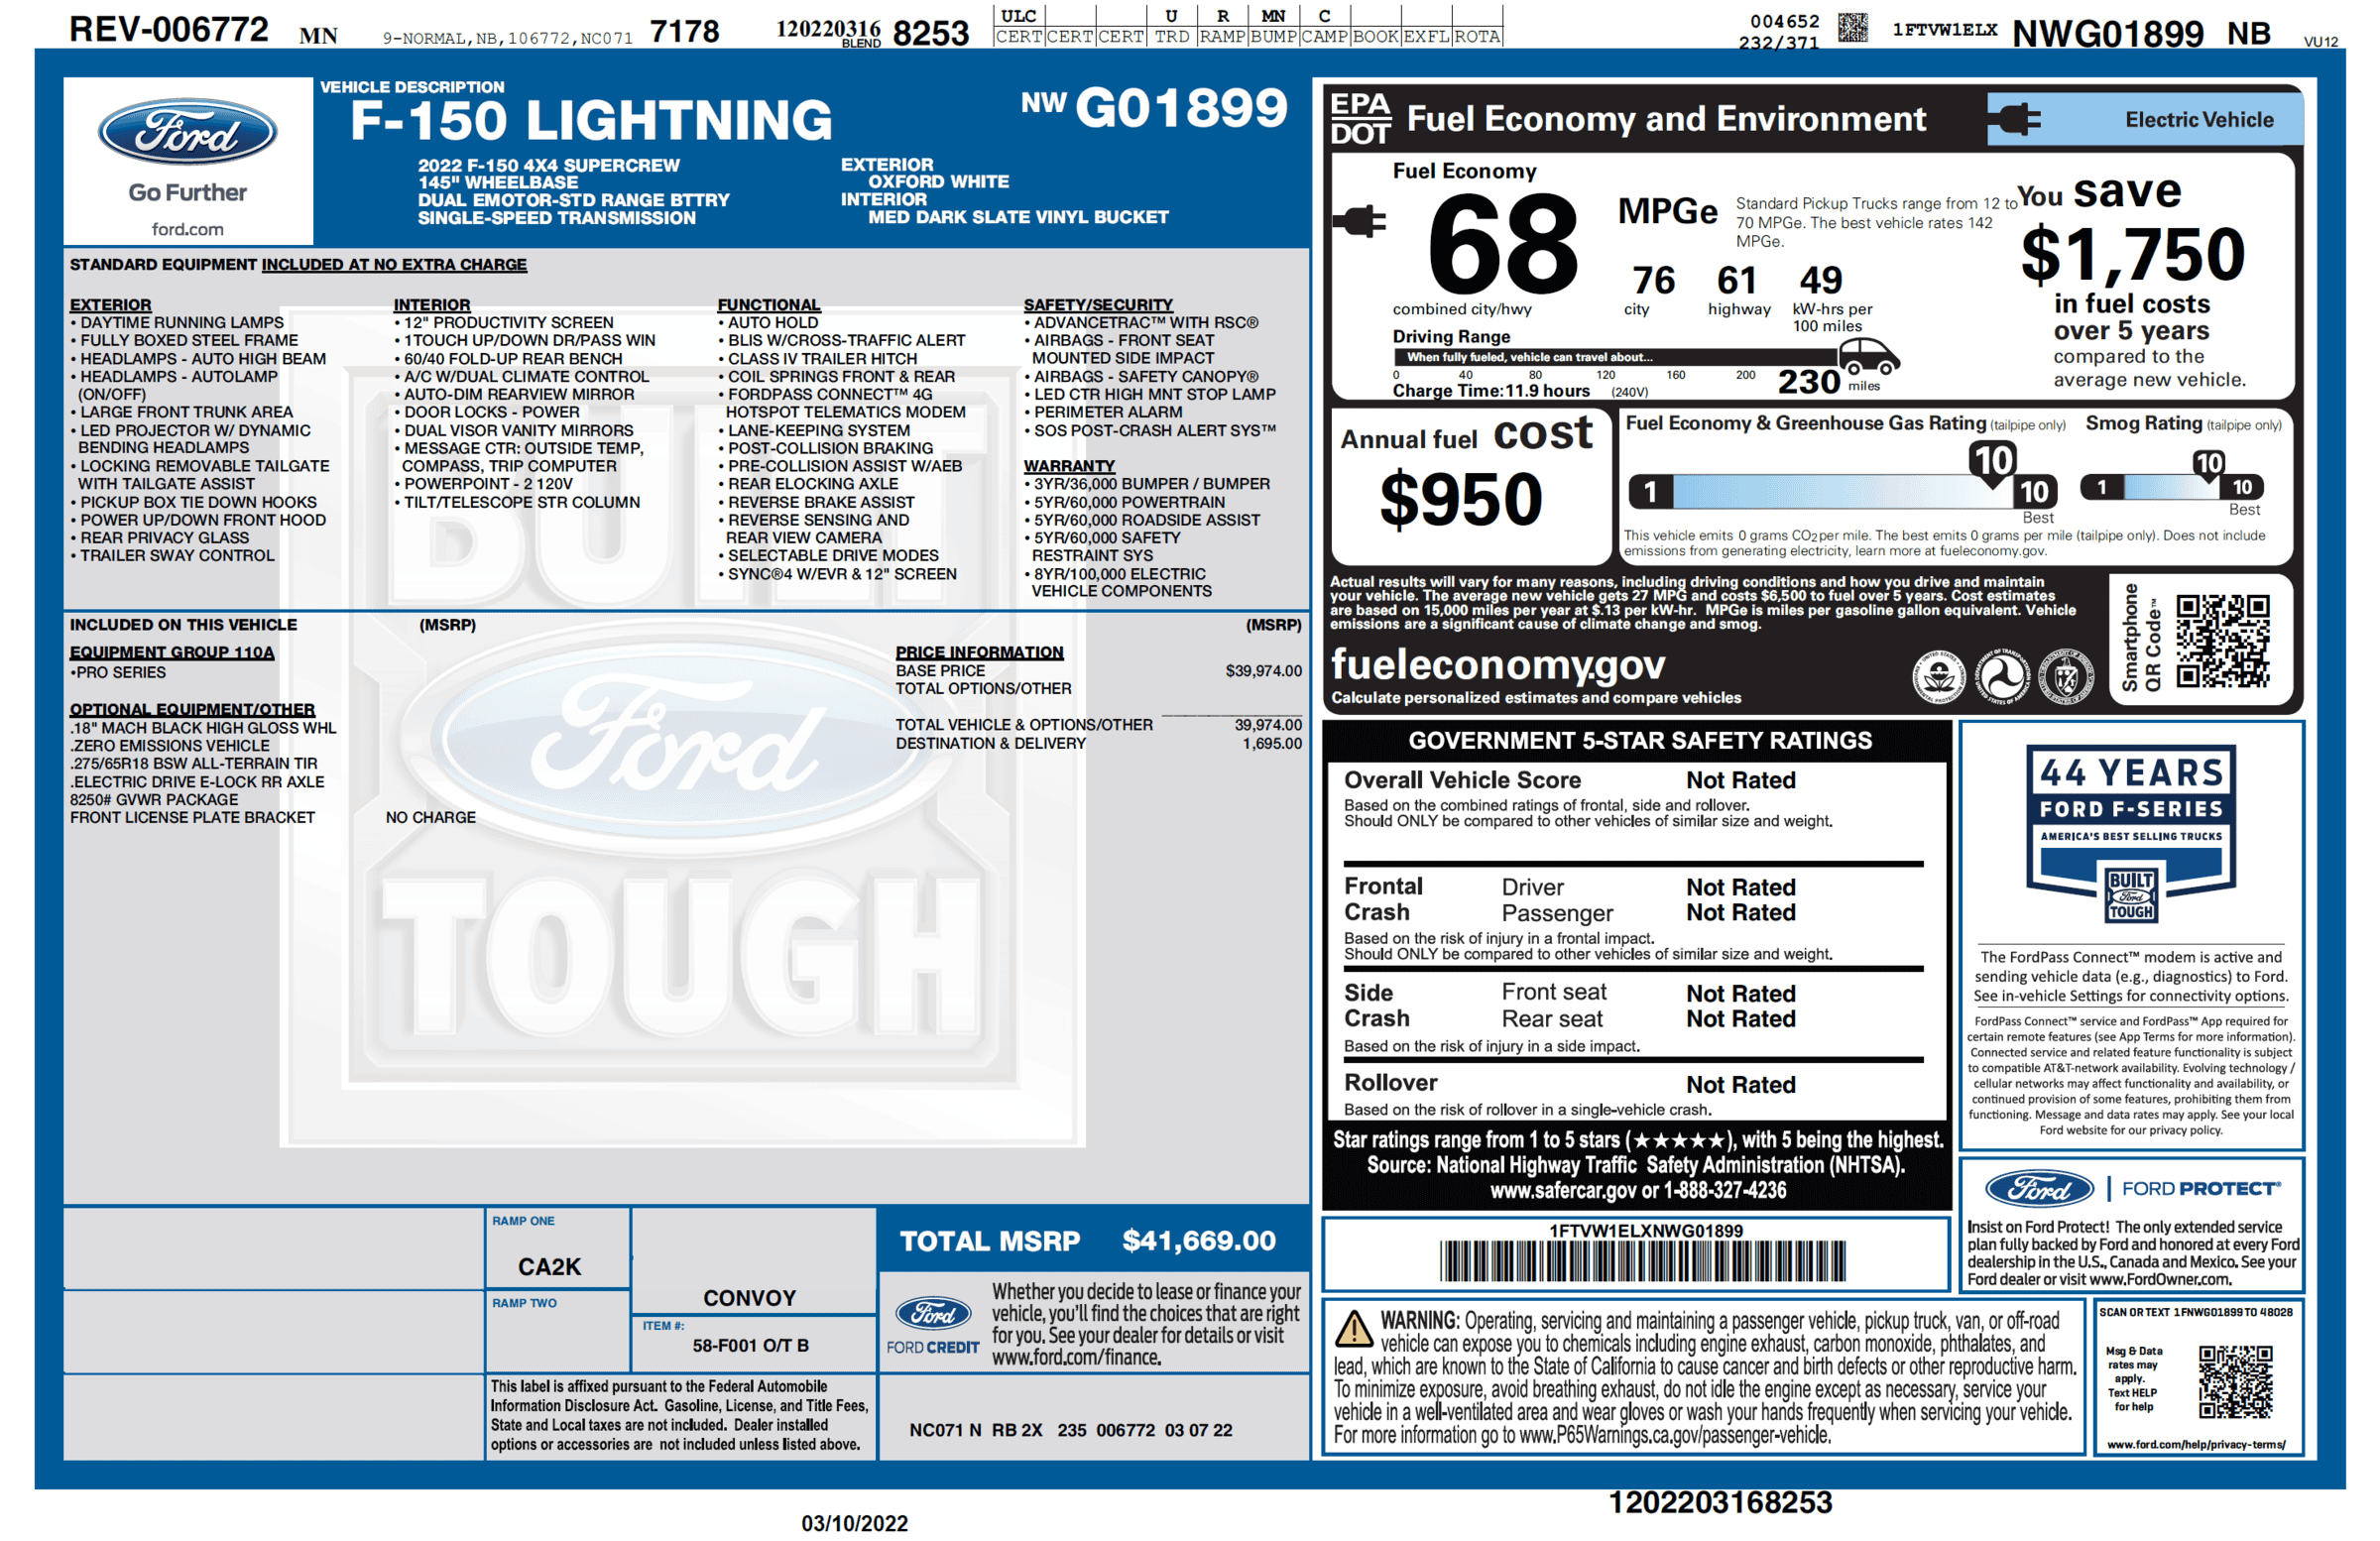 Ford F-150 Lightning F-150 Lightning Official EPA Range MPGe Revealed in Window Sticker (Base + Extended Range)! 1647536408566